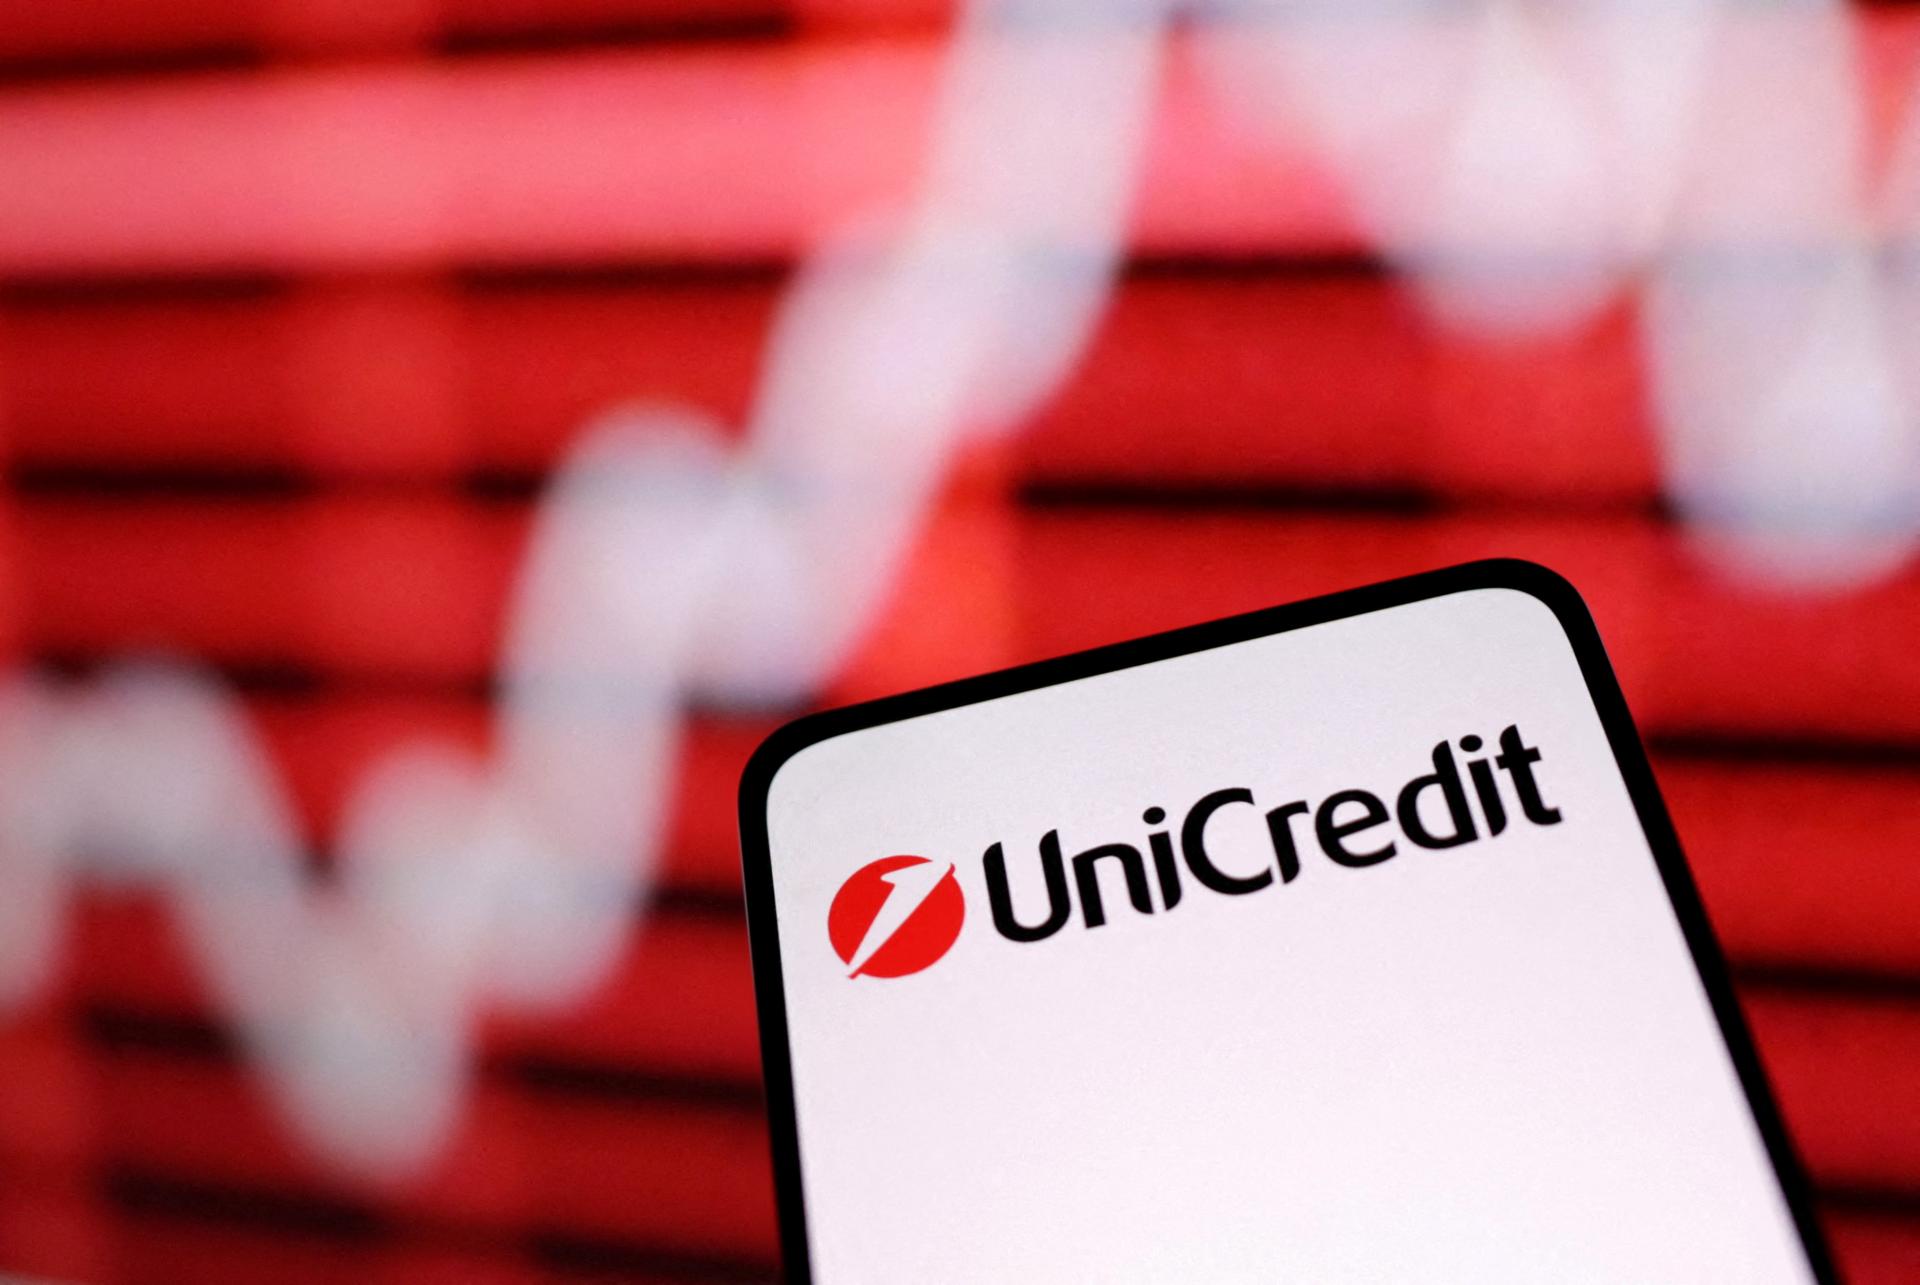 Talianska banka UniCredit zvýšila zisk o 24 percent, zlepšila aj výhľad